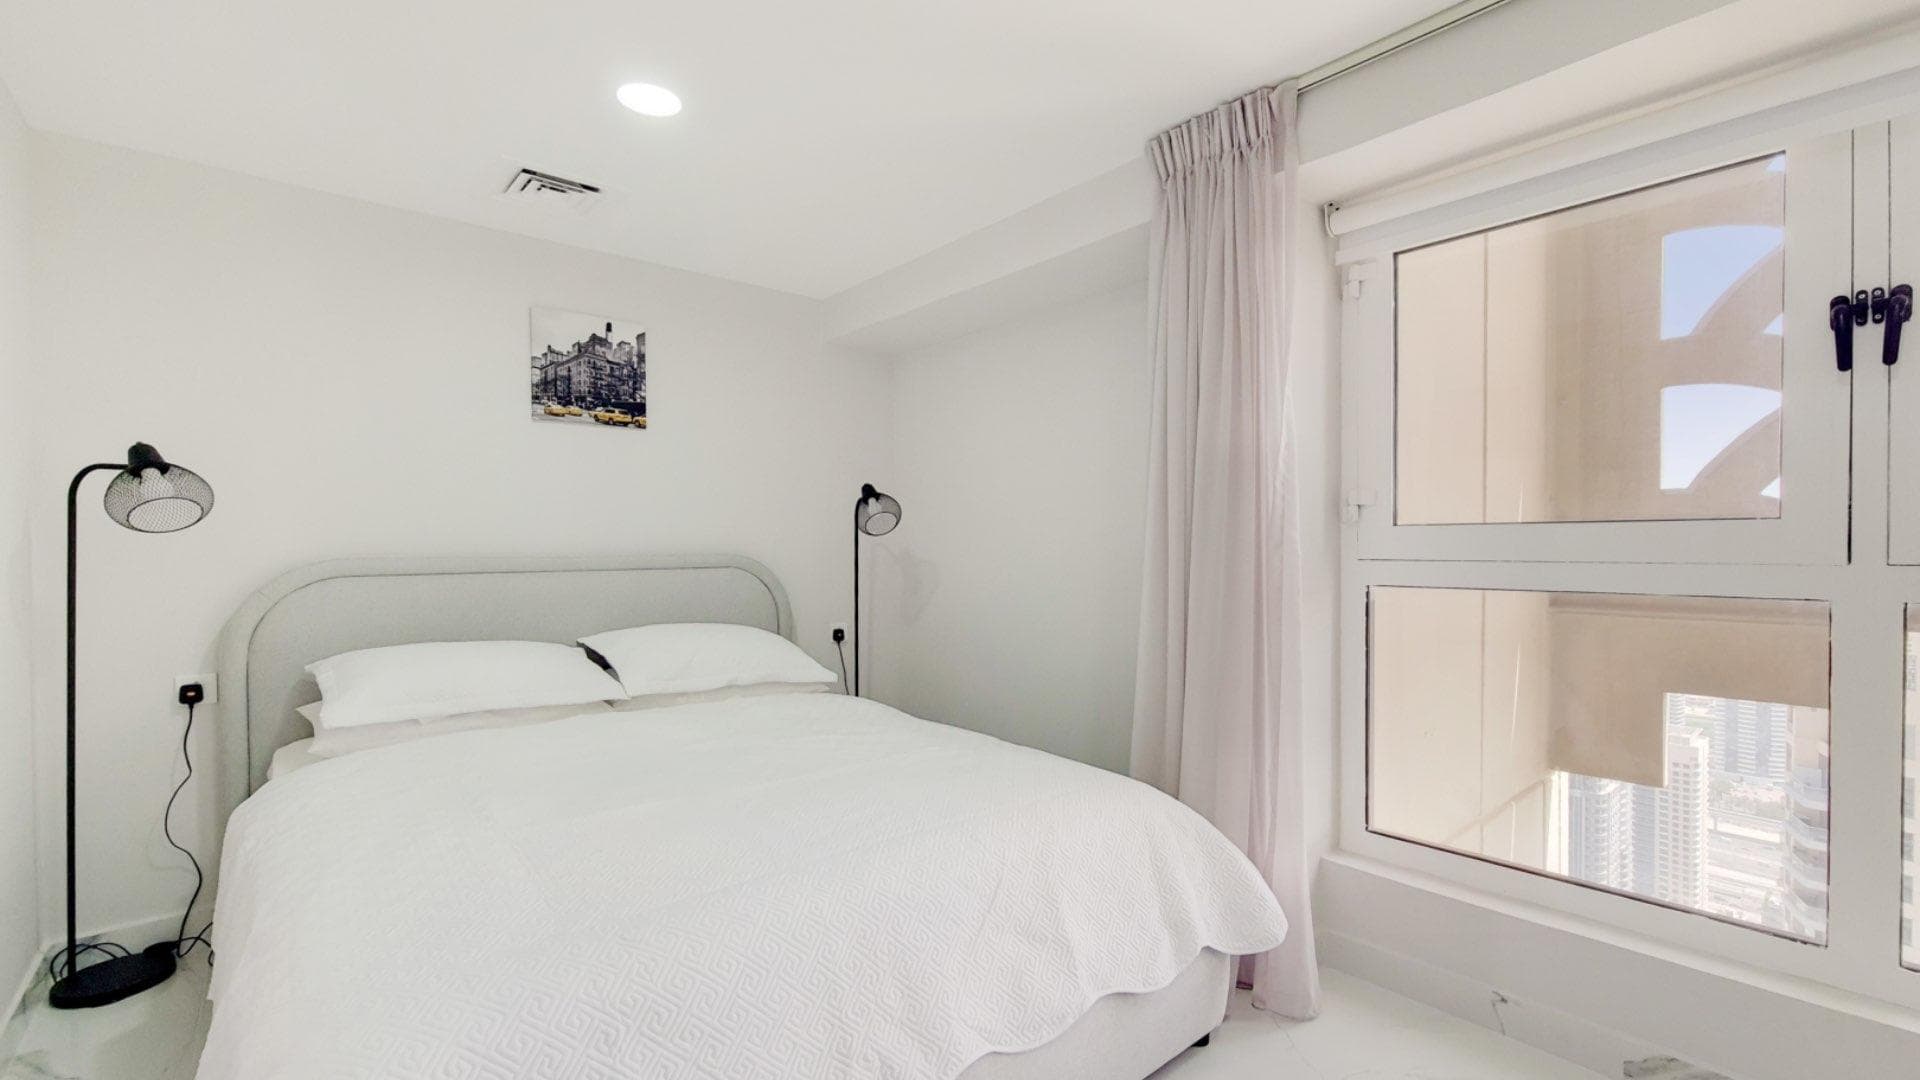 2 Bedroom Apartment For Rent Murjan Lp14806 308e4471790ed600.jpg